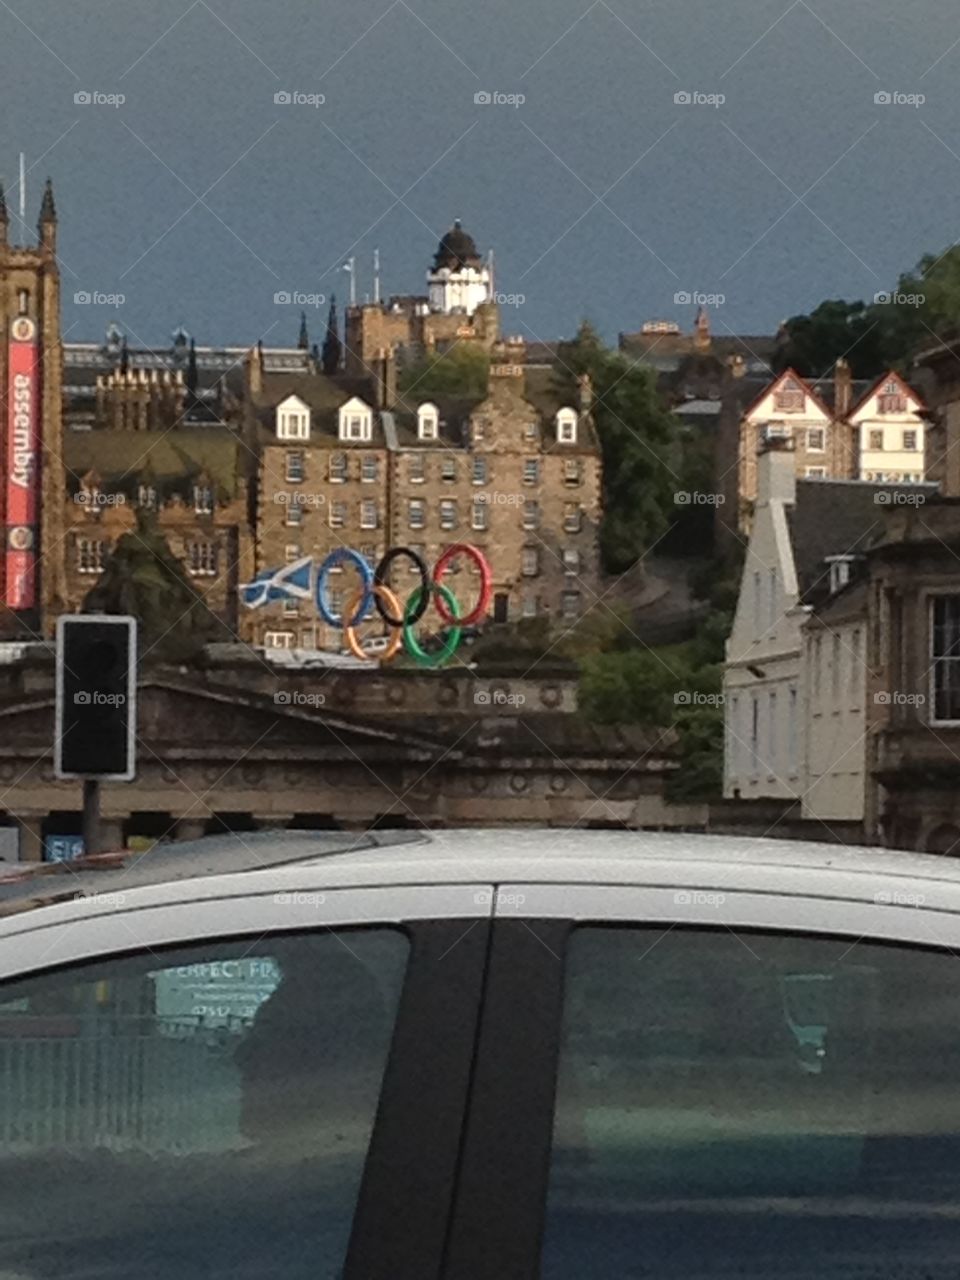 Edinburgh, summer Olympics 2012